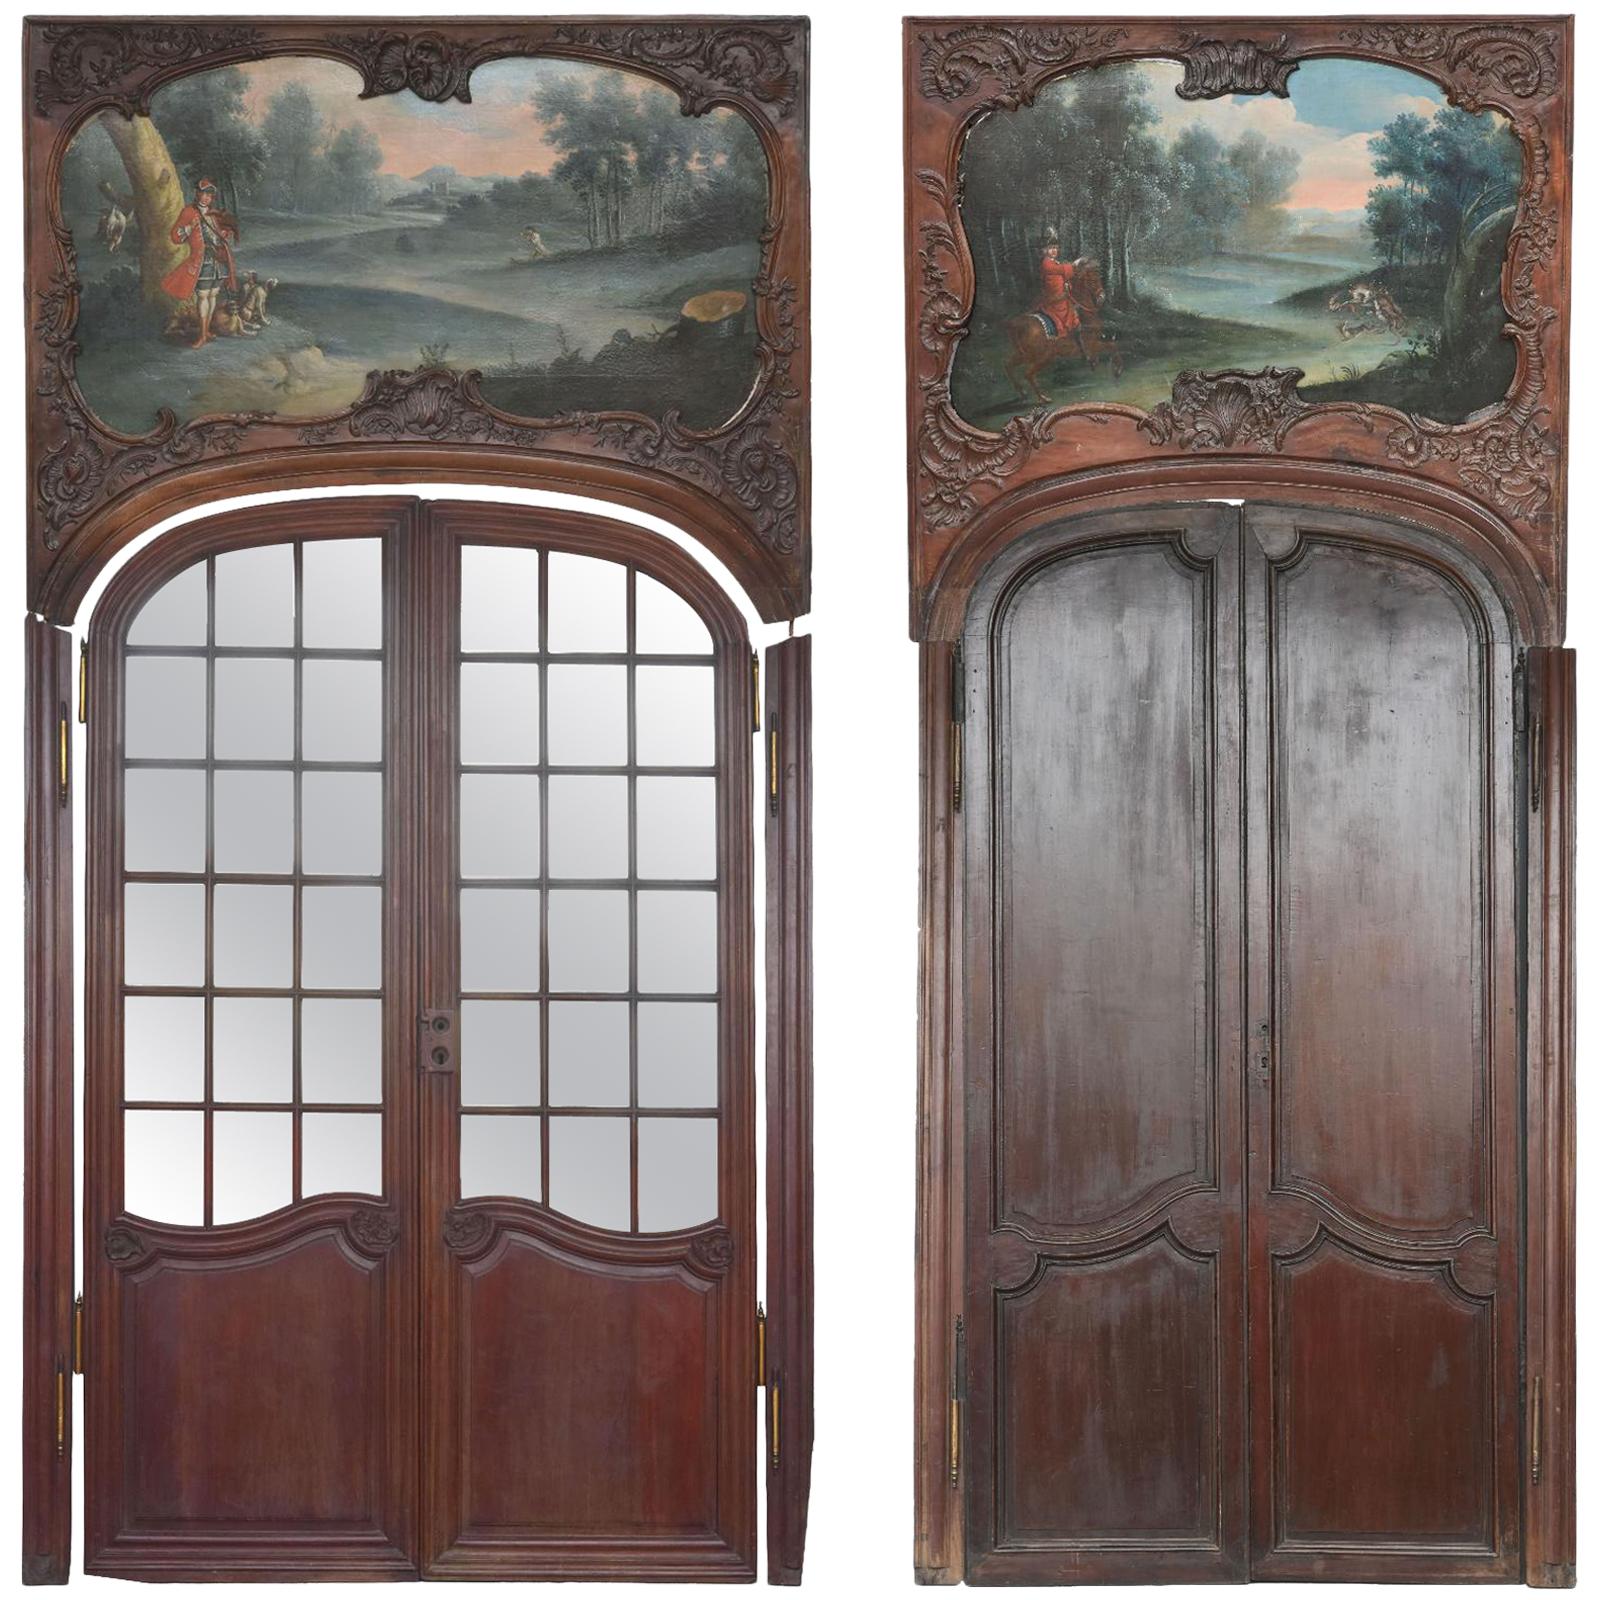 Portes en acajou du 18ème siècle d'époque Louis XV décorées d'une peinture de chasse